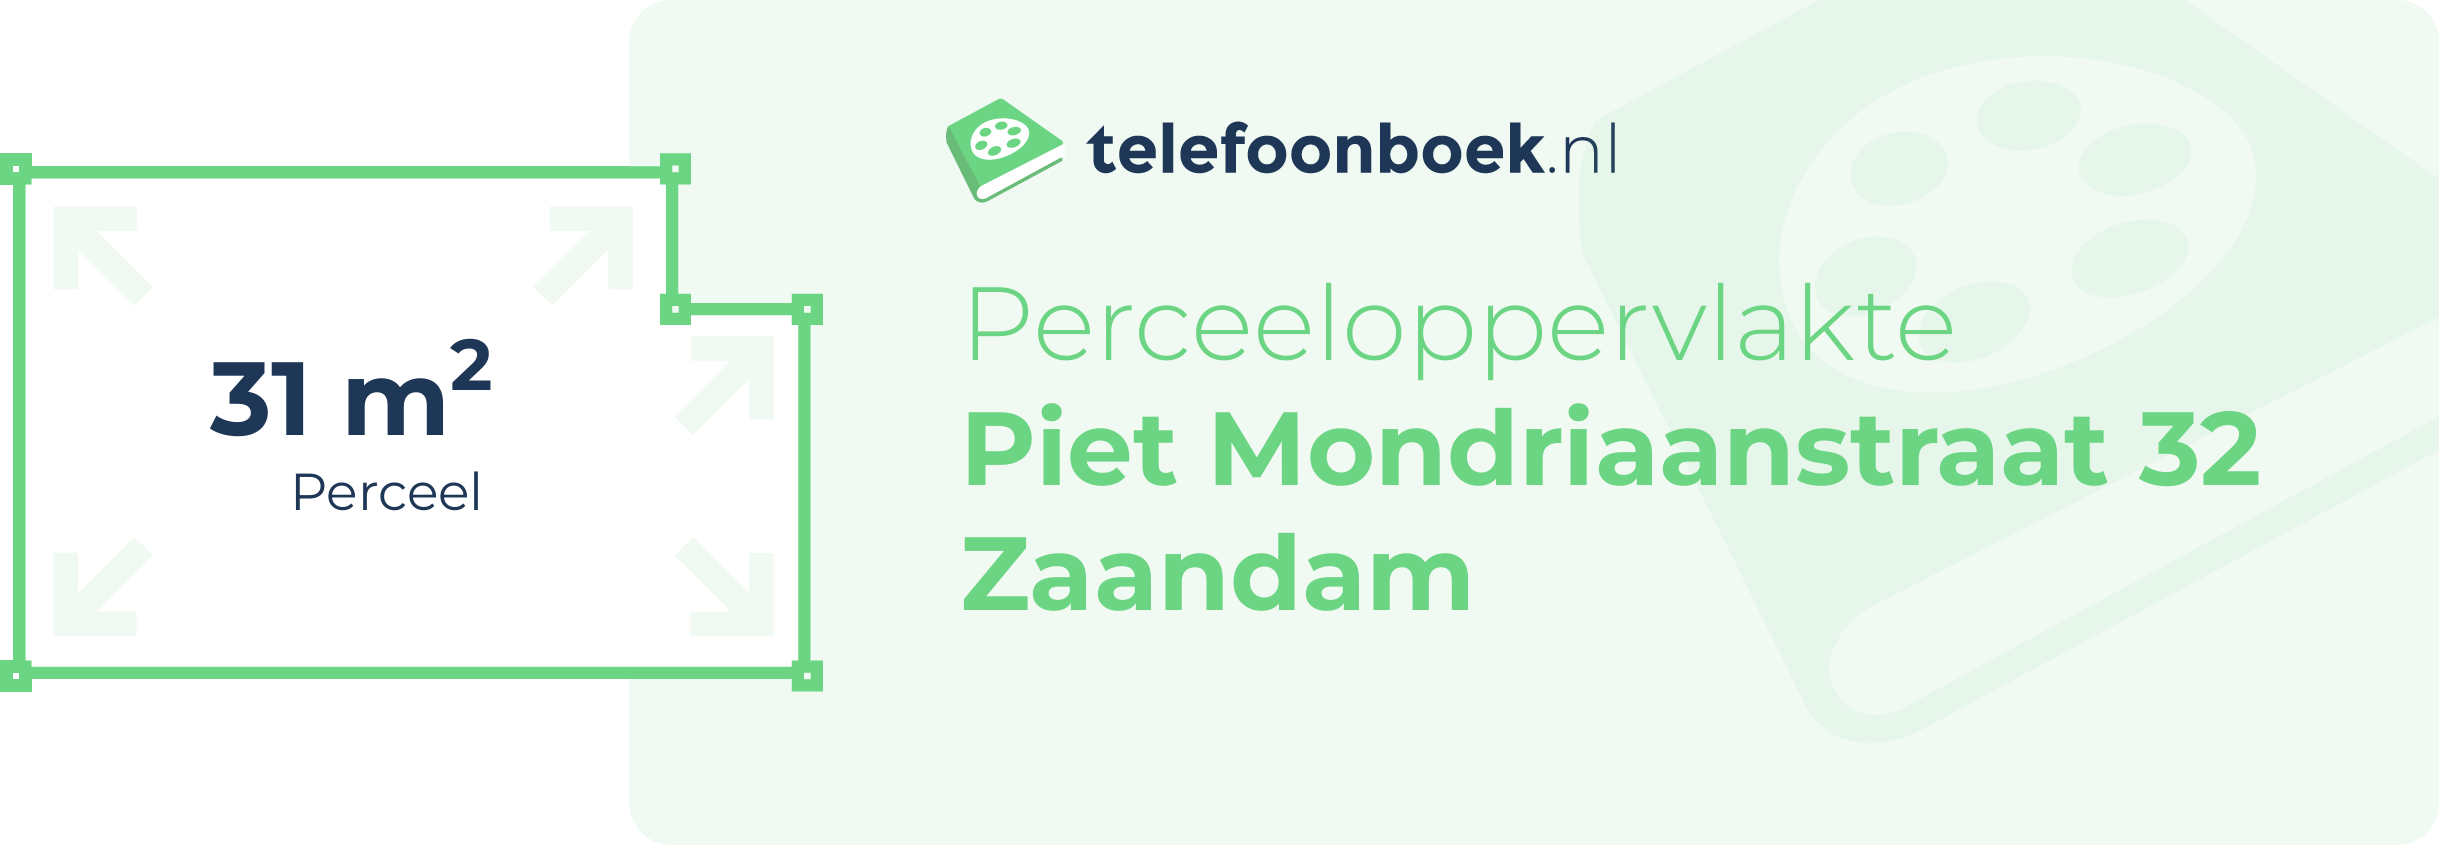 Perceeloppervlakte Piet Mondriaanstraat 32 Zaandam